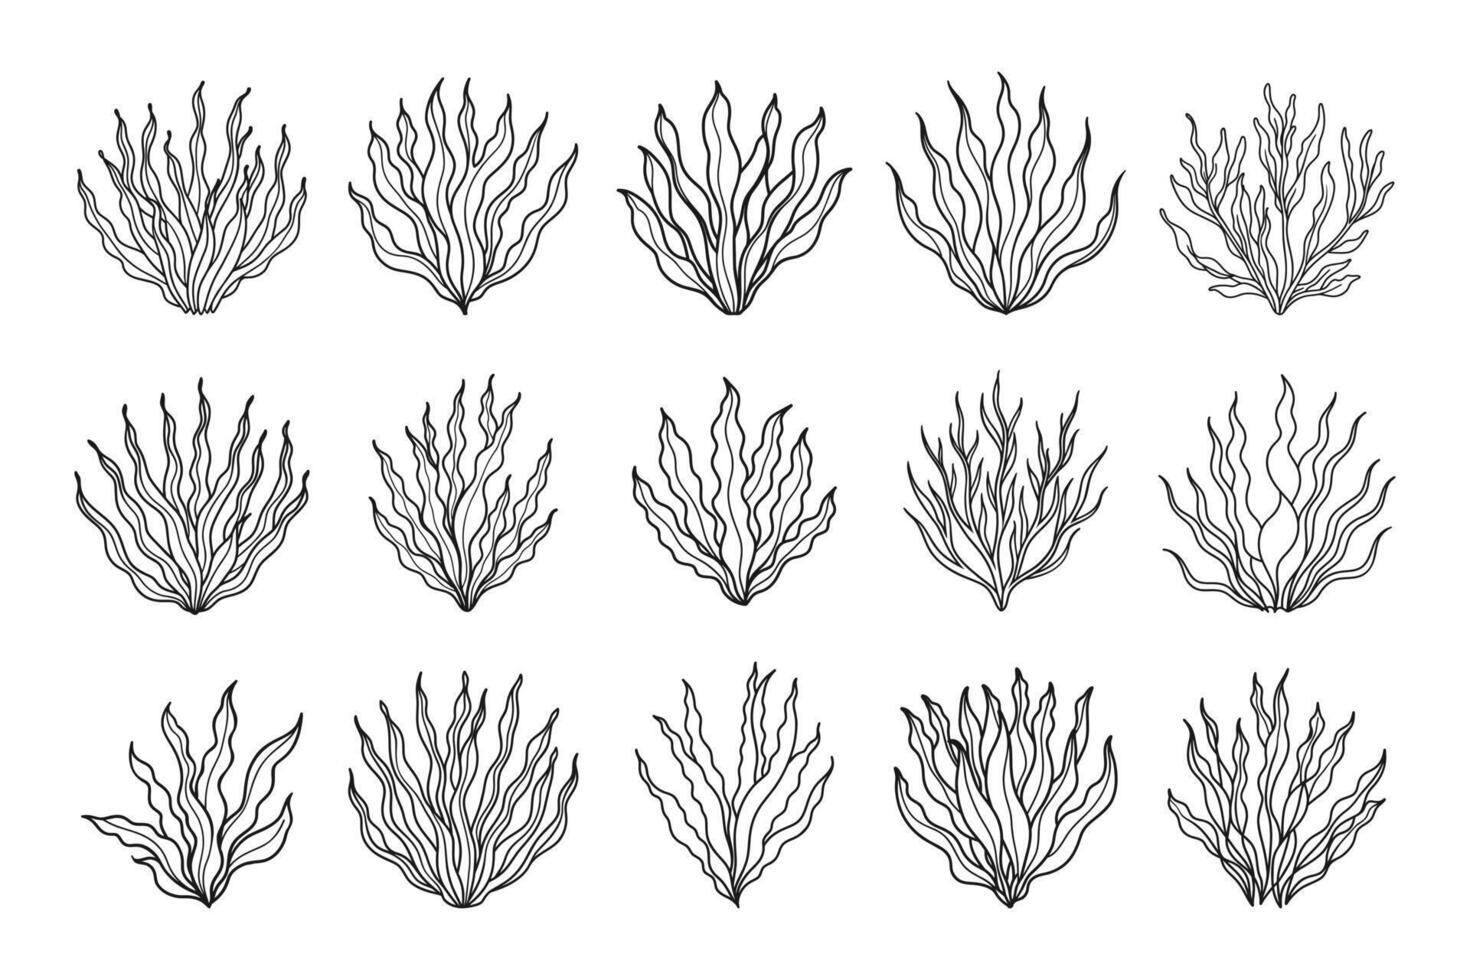 reeks van algen of koraal riffen. verzameling van onderwater- planten. reeks van zeewier pictogrammen. schetsen, illustratie. vector